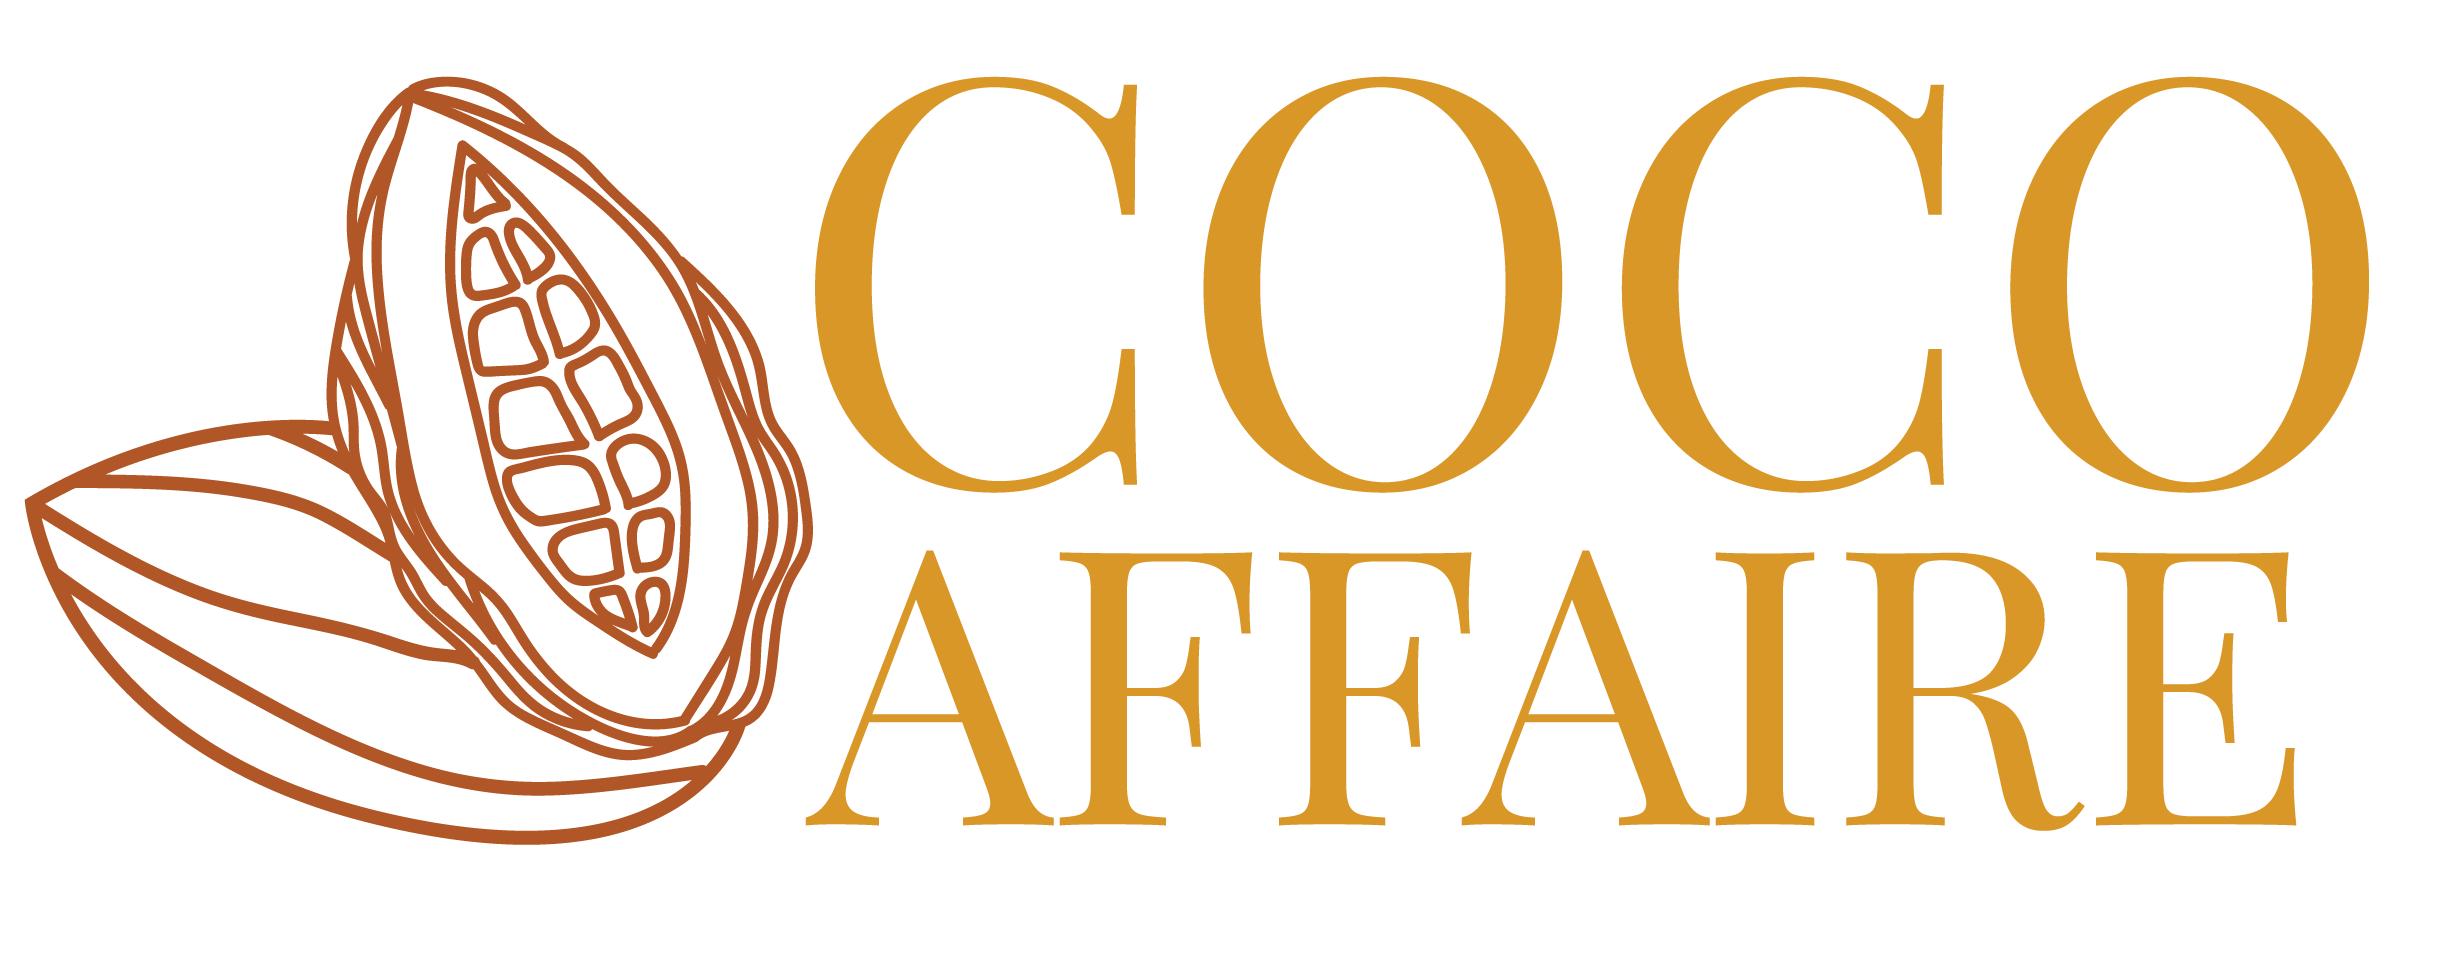 Coco Affaire